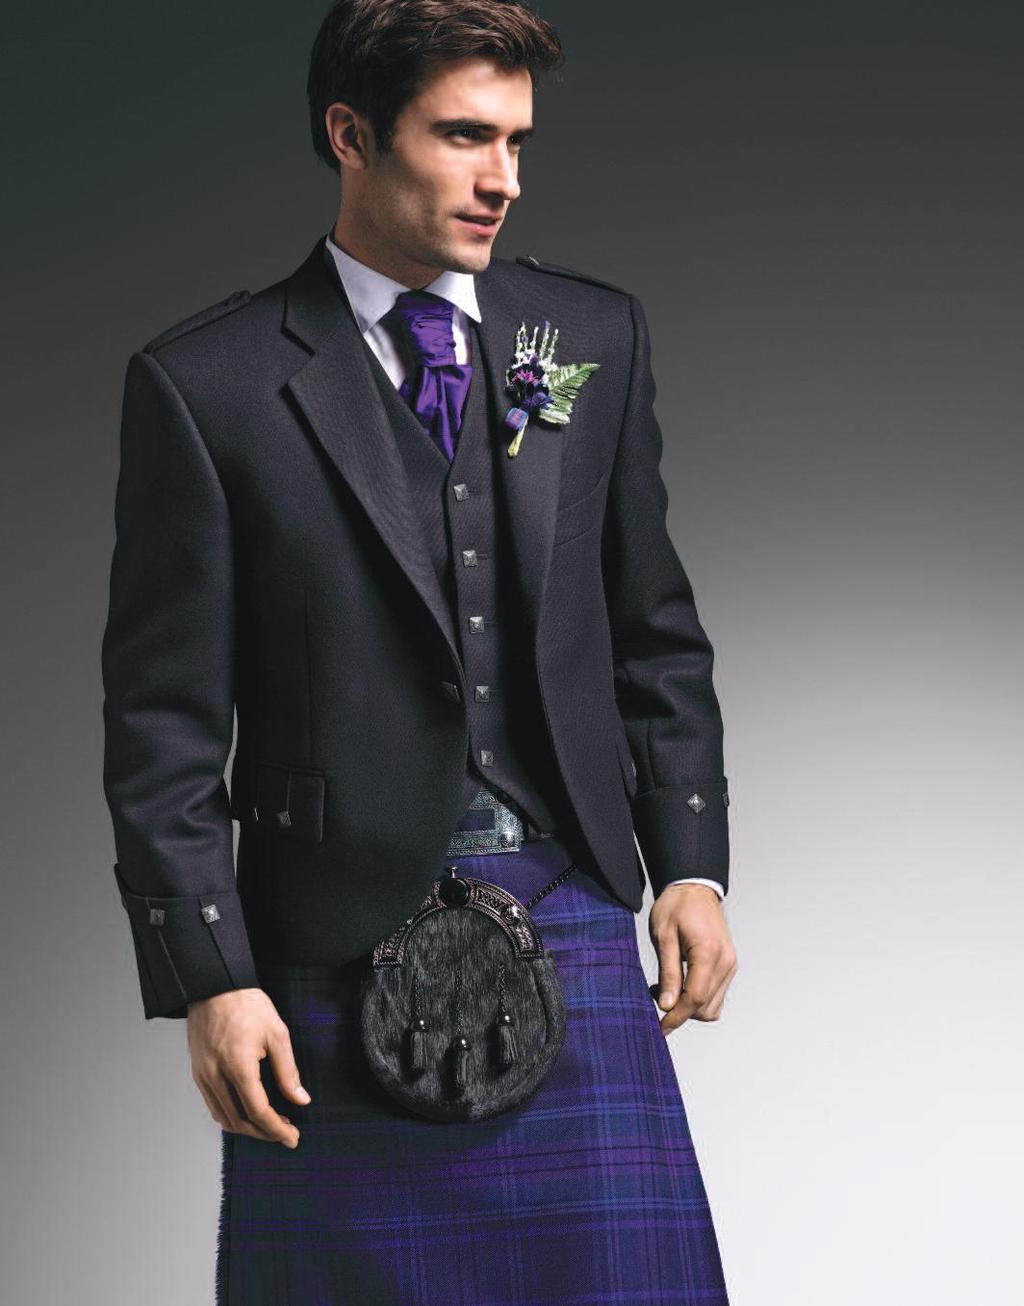 Spirit of Scotland Kilt Worn with dark button Argyll Jacket, matching